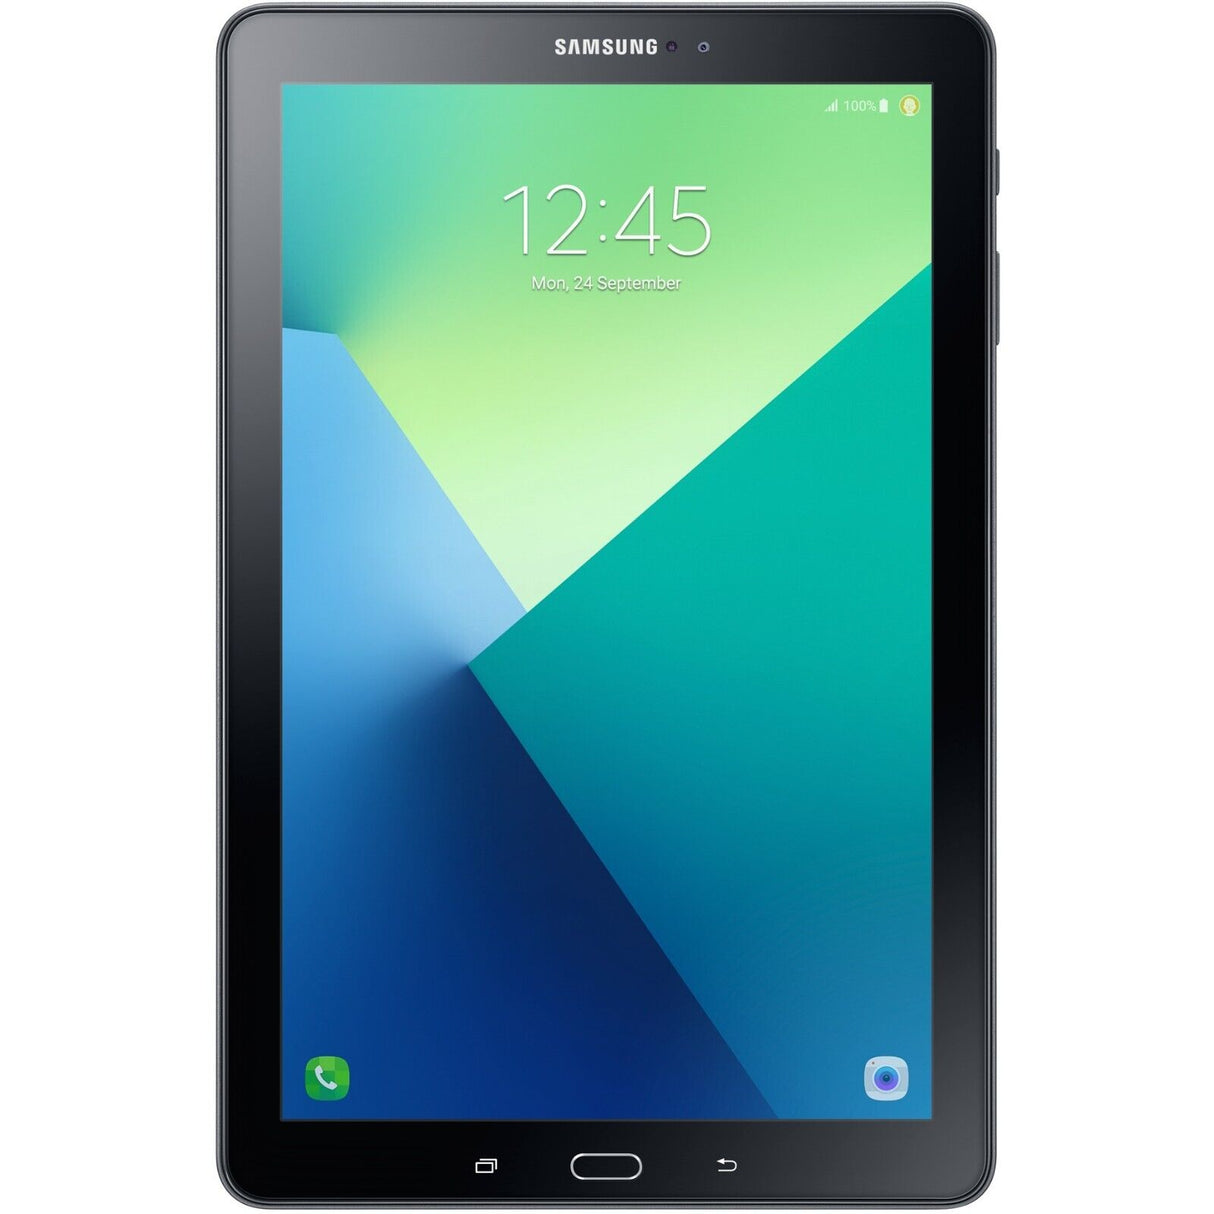 Samsung Galaxy Tab A SM-P585Y 16GB 10.1" WiFi+Cellular Tablet No Stylus Pen